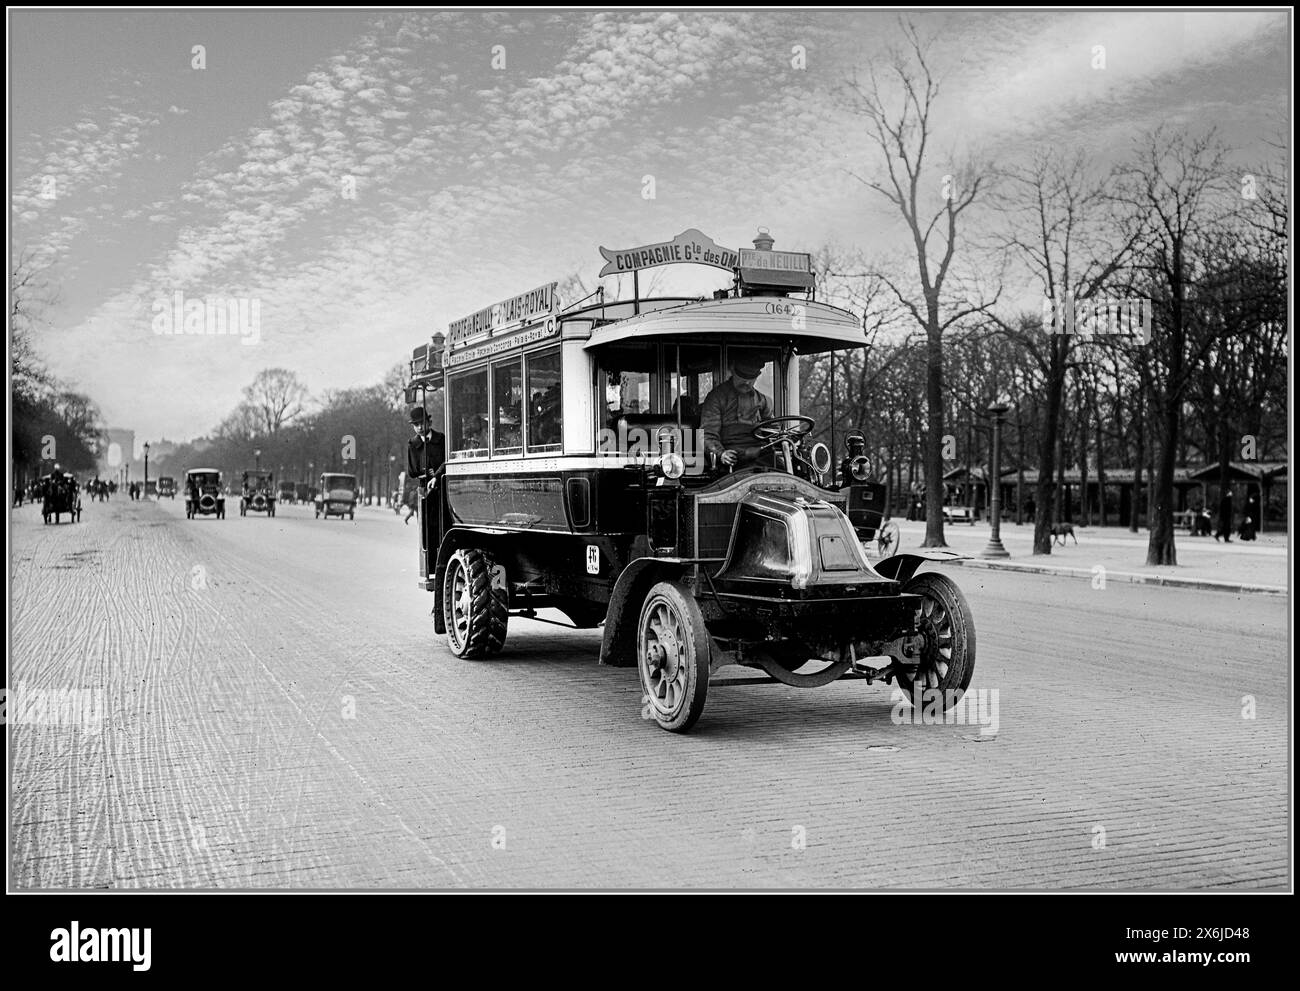 Vintage Paris 1910 autobus RENAULT 164 Compagnie générale des omnibus CGO with Arc de Triomphe in background Paris France. 1900's public transport in Paris to Pte. de Neuilly- Palais Royal Stock Photo